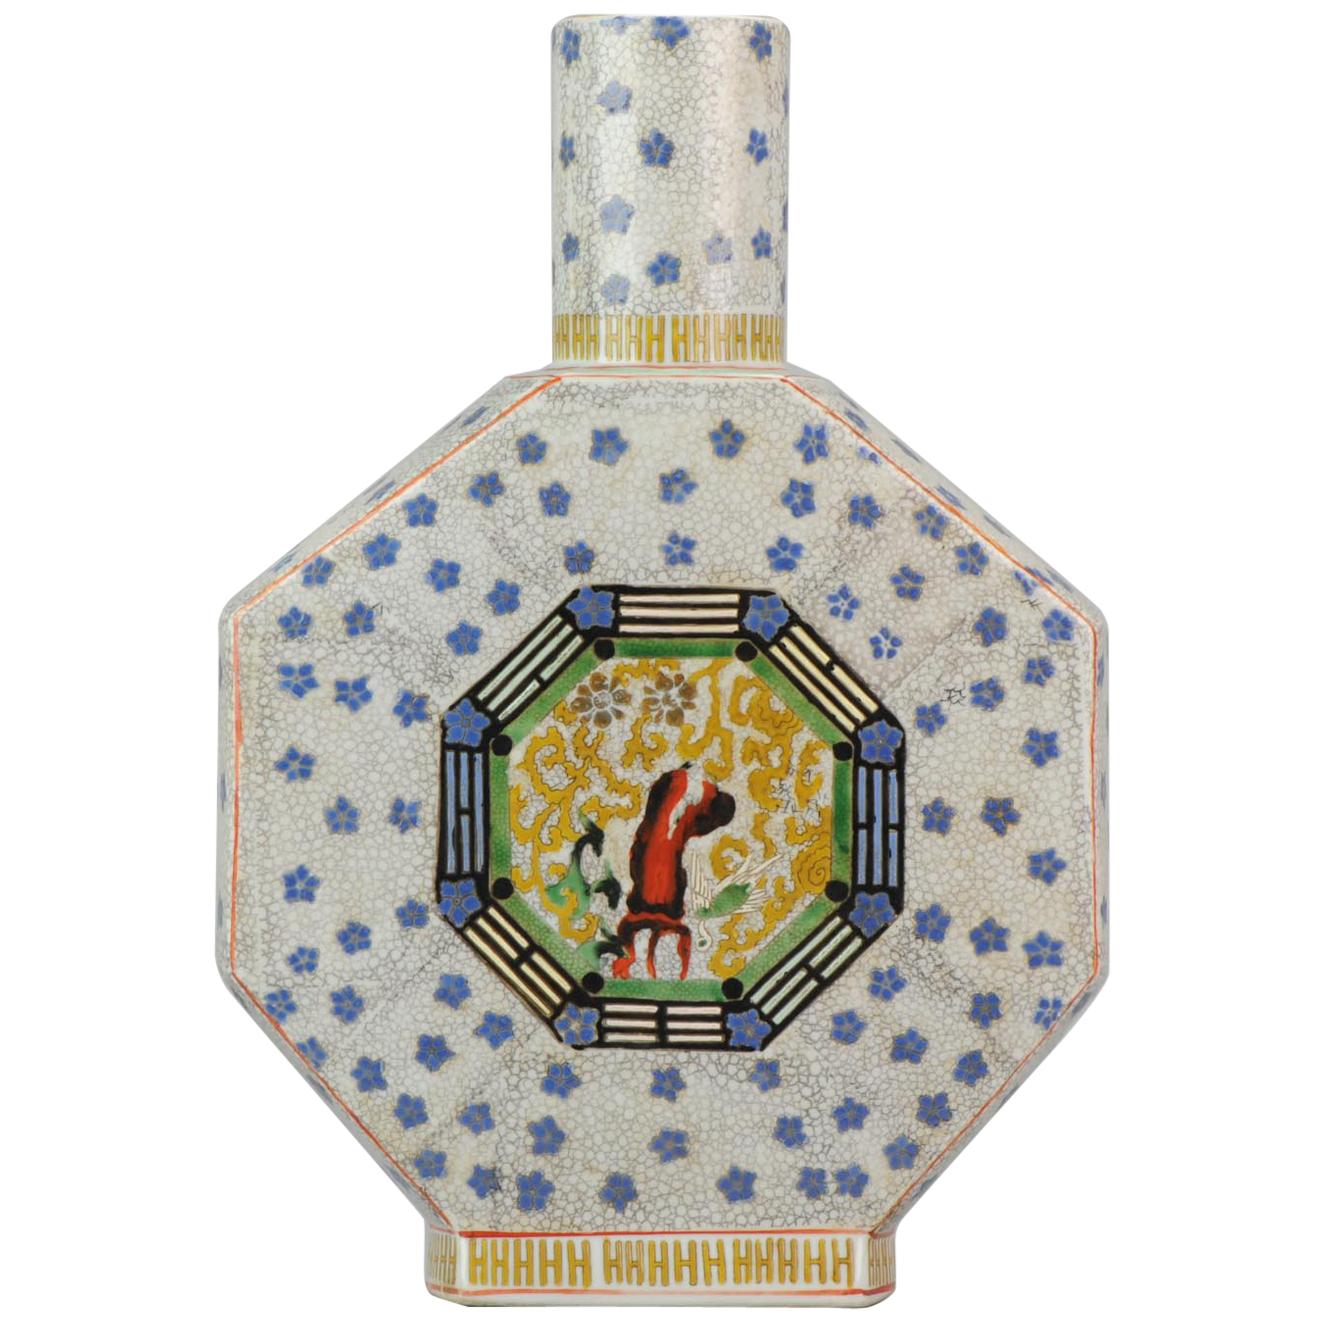 Chinesische Vase des 20. Jahrhunderts aus der PRoC-Periode mit Fenghuang-Kranen-Mondflask